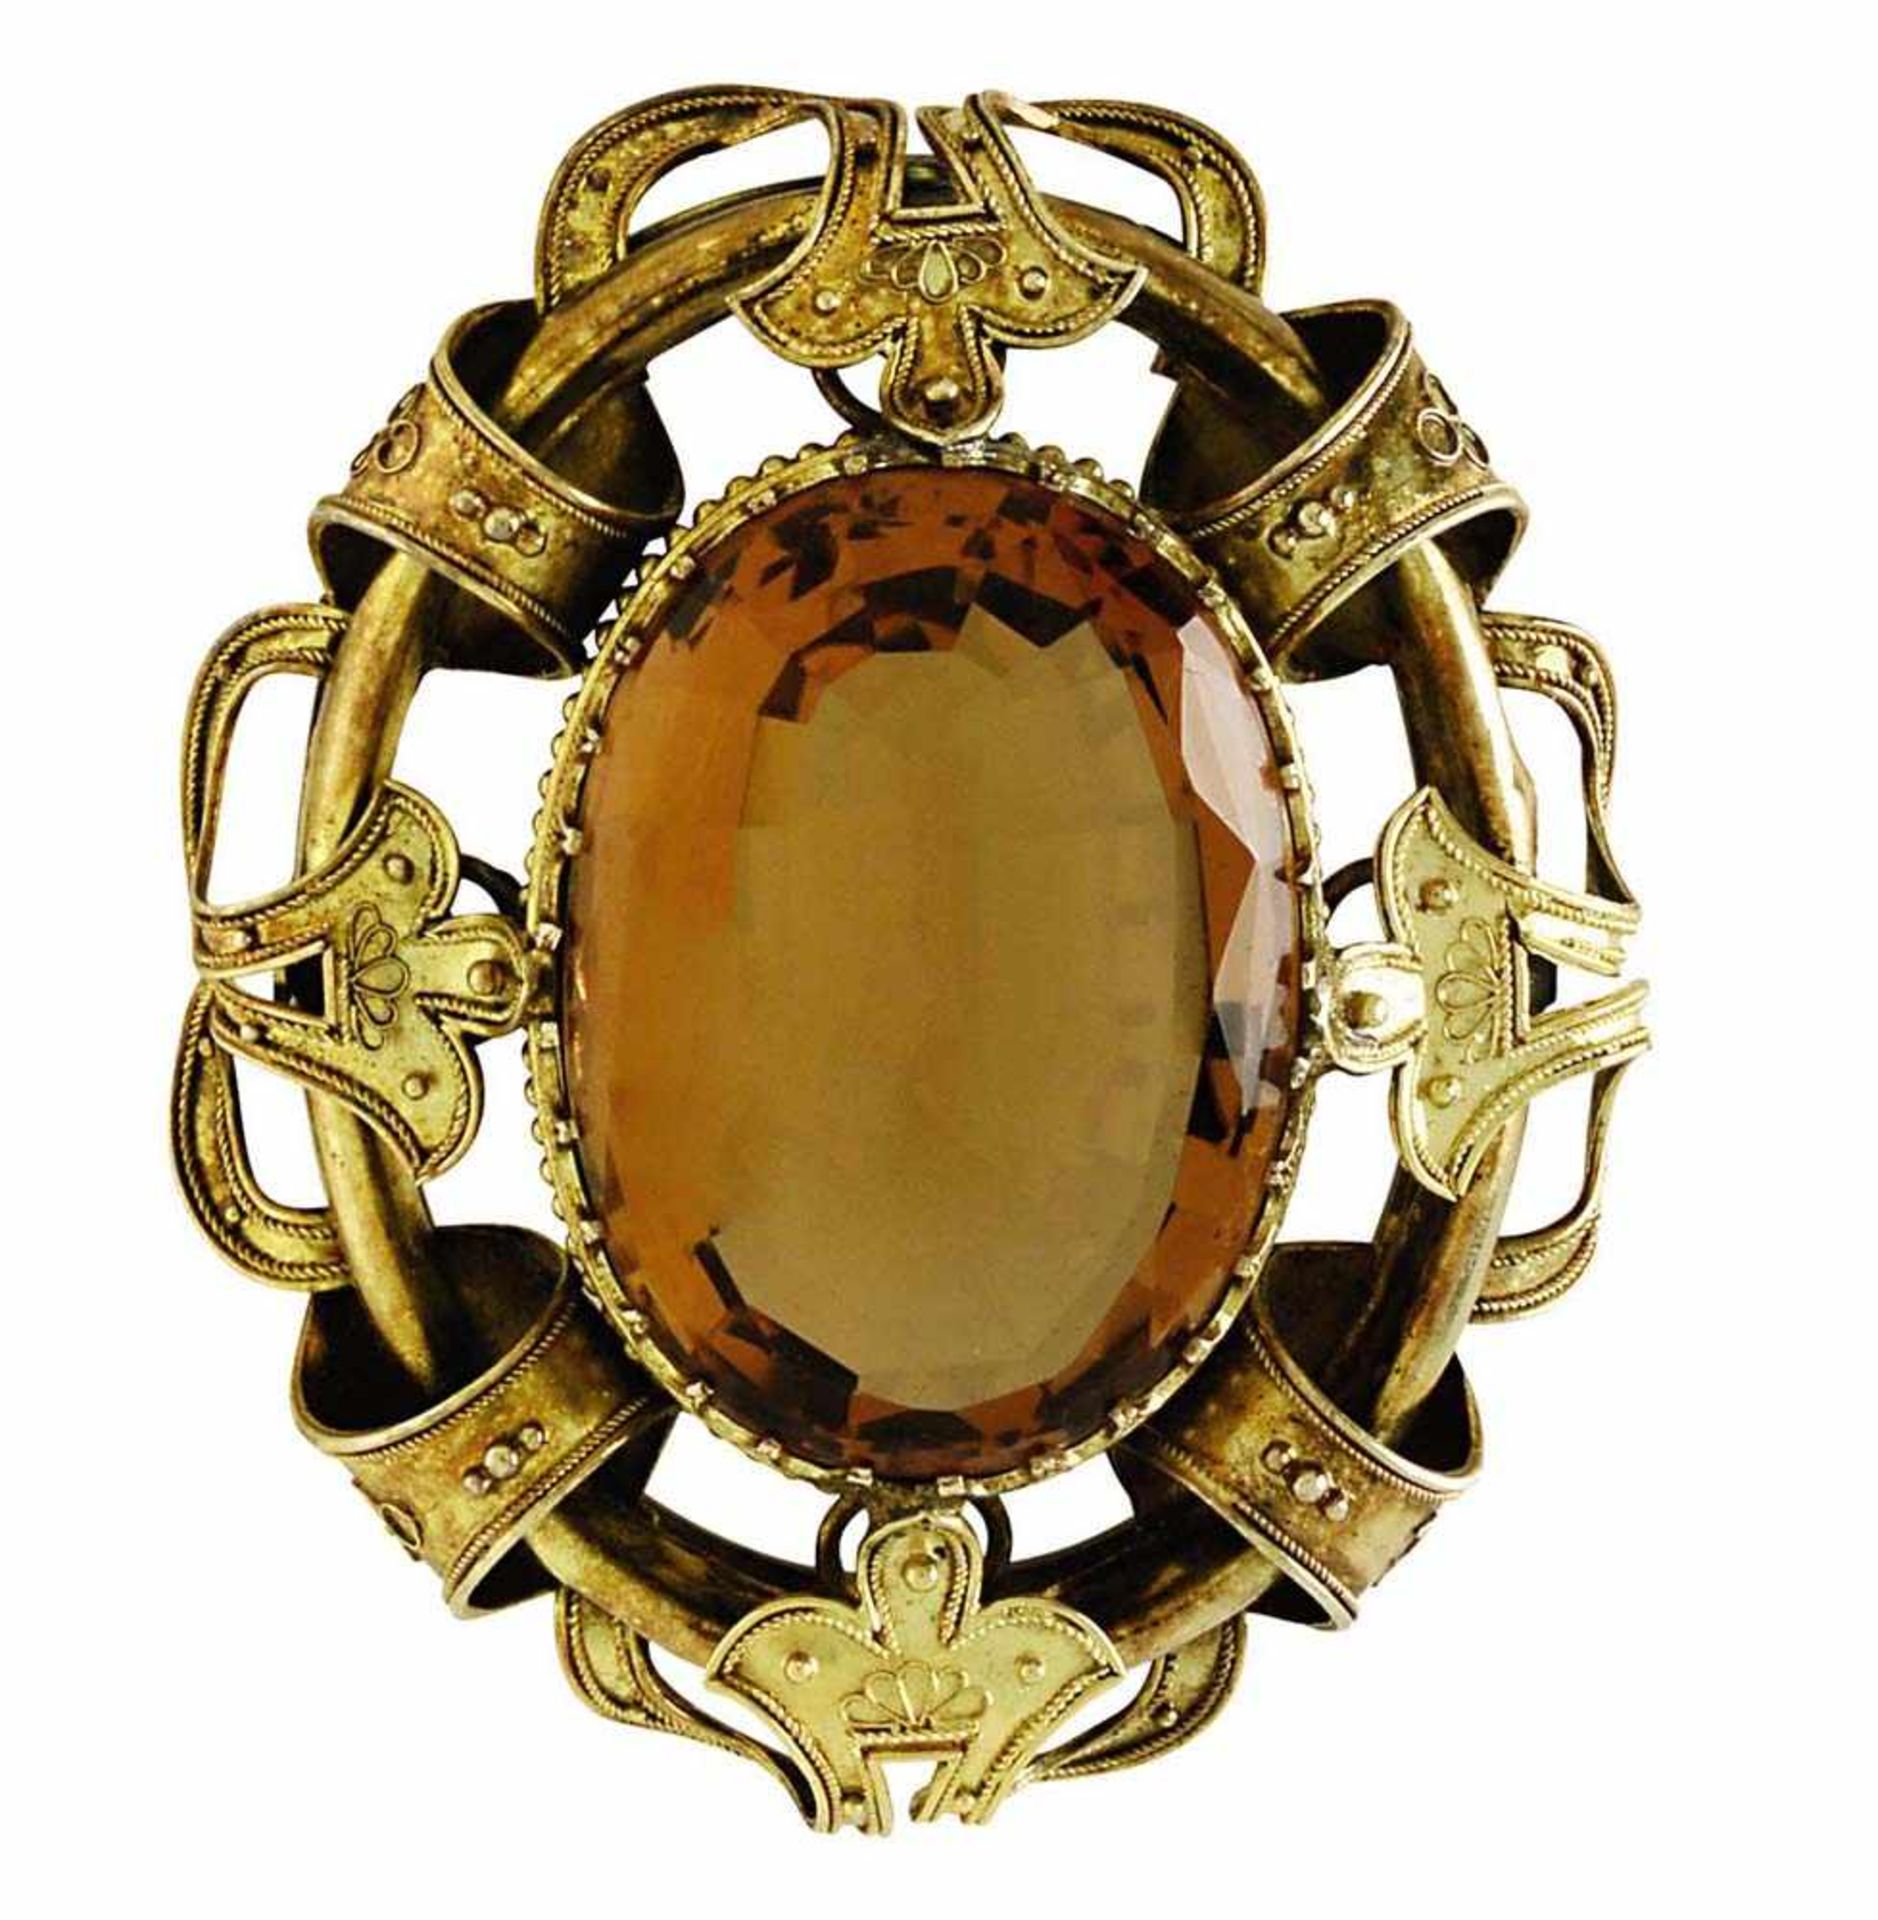 Anhänger oder BroscheUm 188018 K GG und Silber, vergoldet. Oval, mittig besetzt mit einem oval